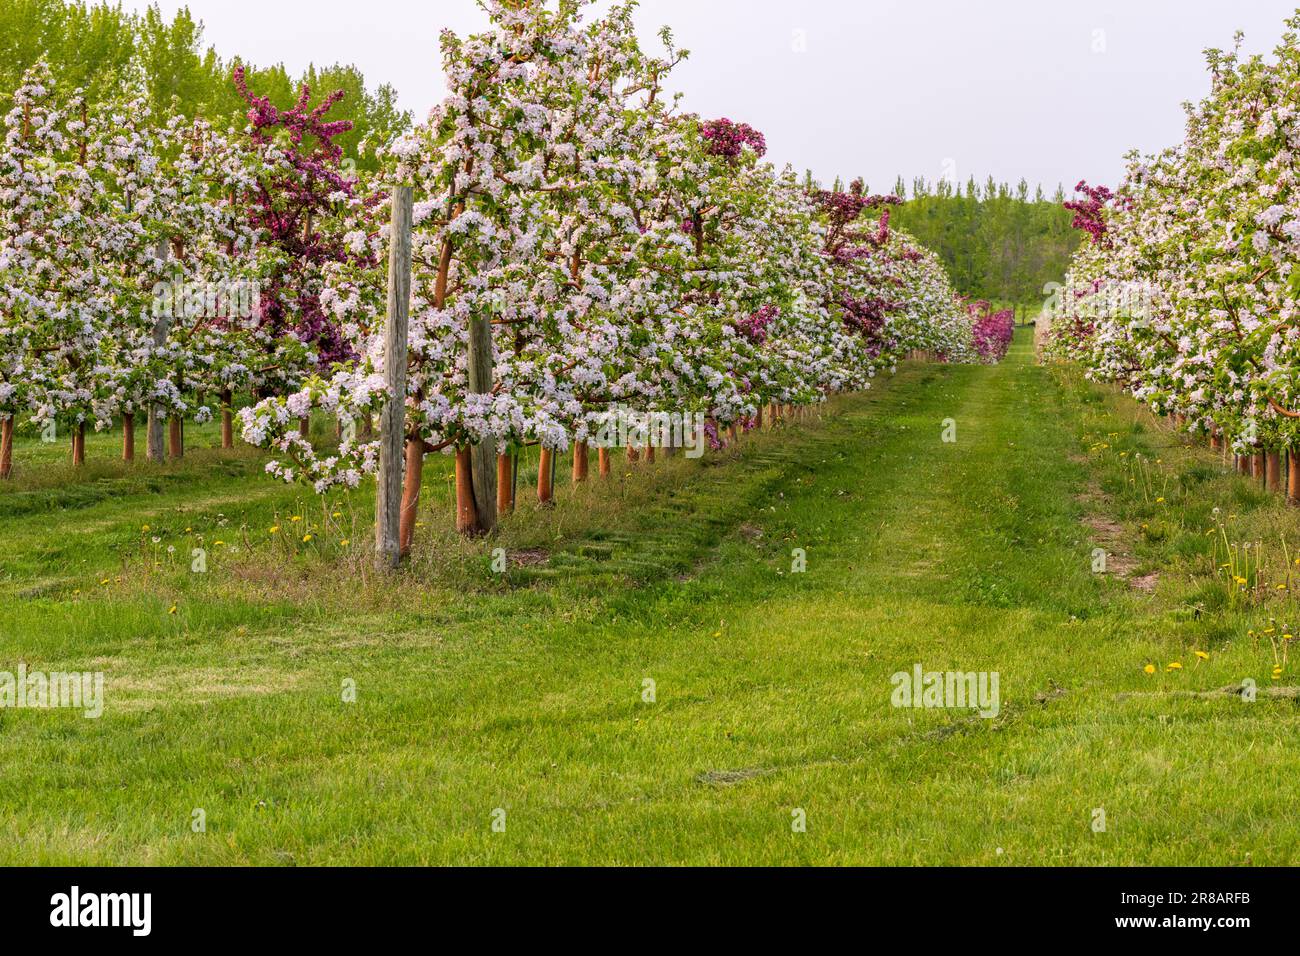 Un verger de pommes dans le comté de Door, Wisconsin. Bien que le plus connu pour ses vergers de cerisiers, il y a aussi un nombre abondant de vergers de pommiers ici. Banque D'Images